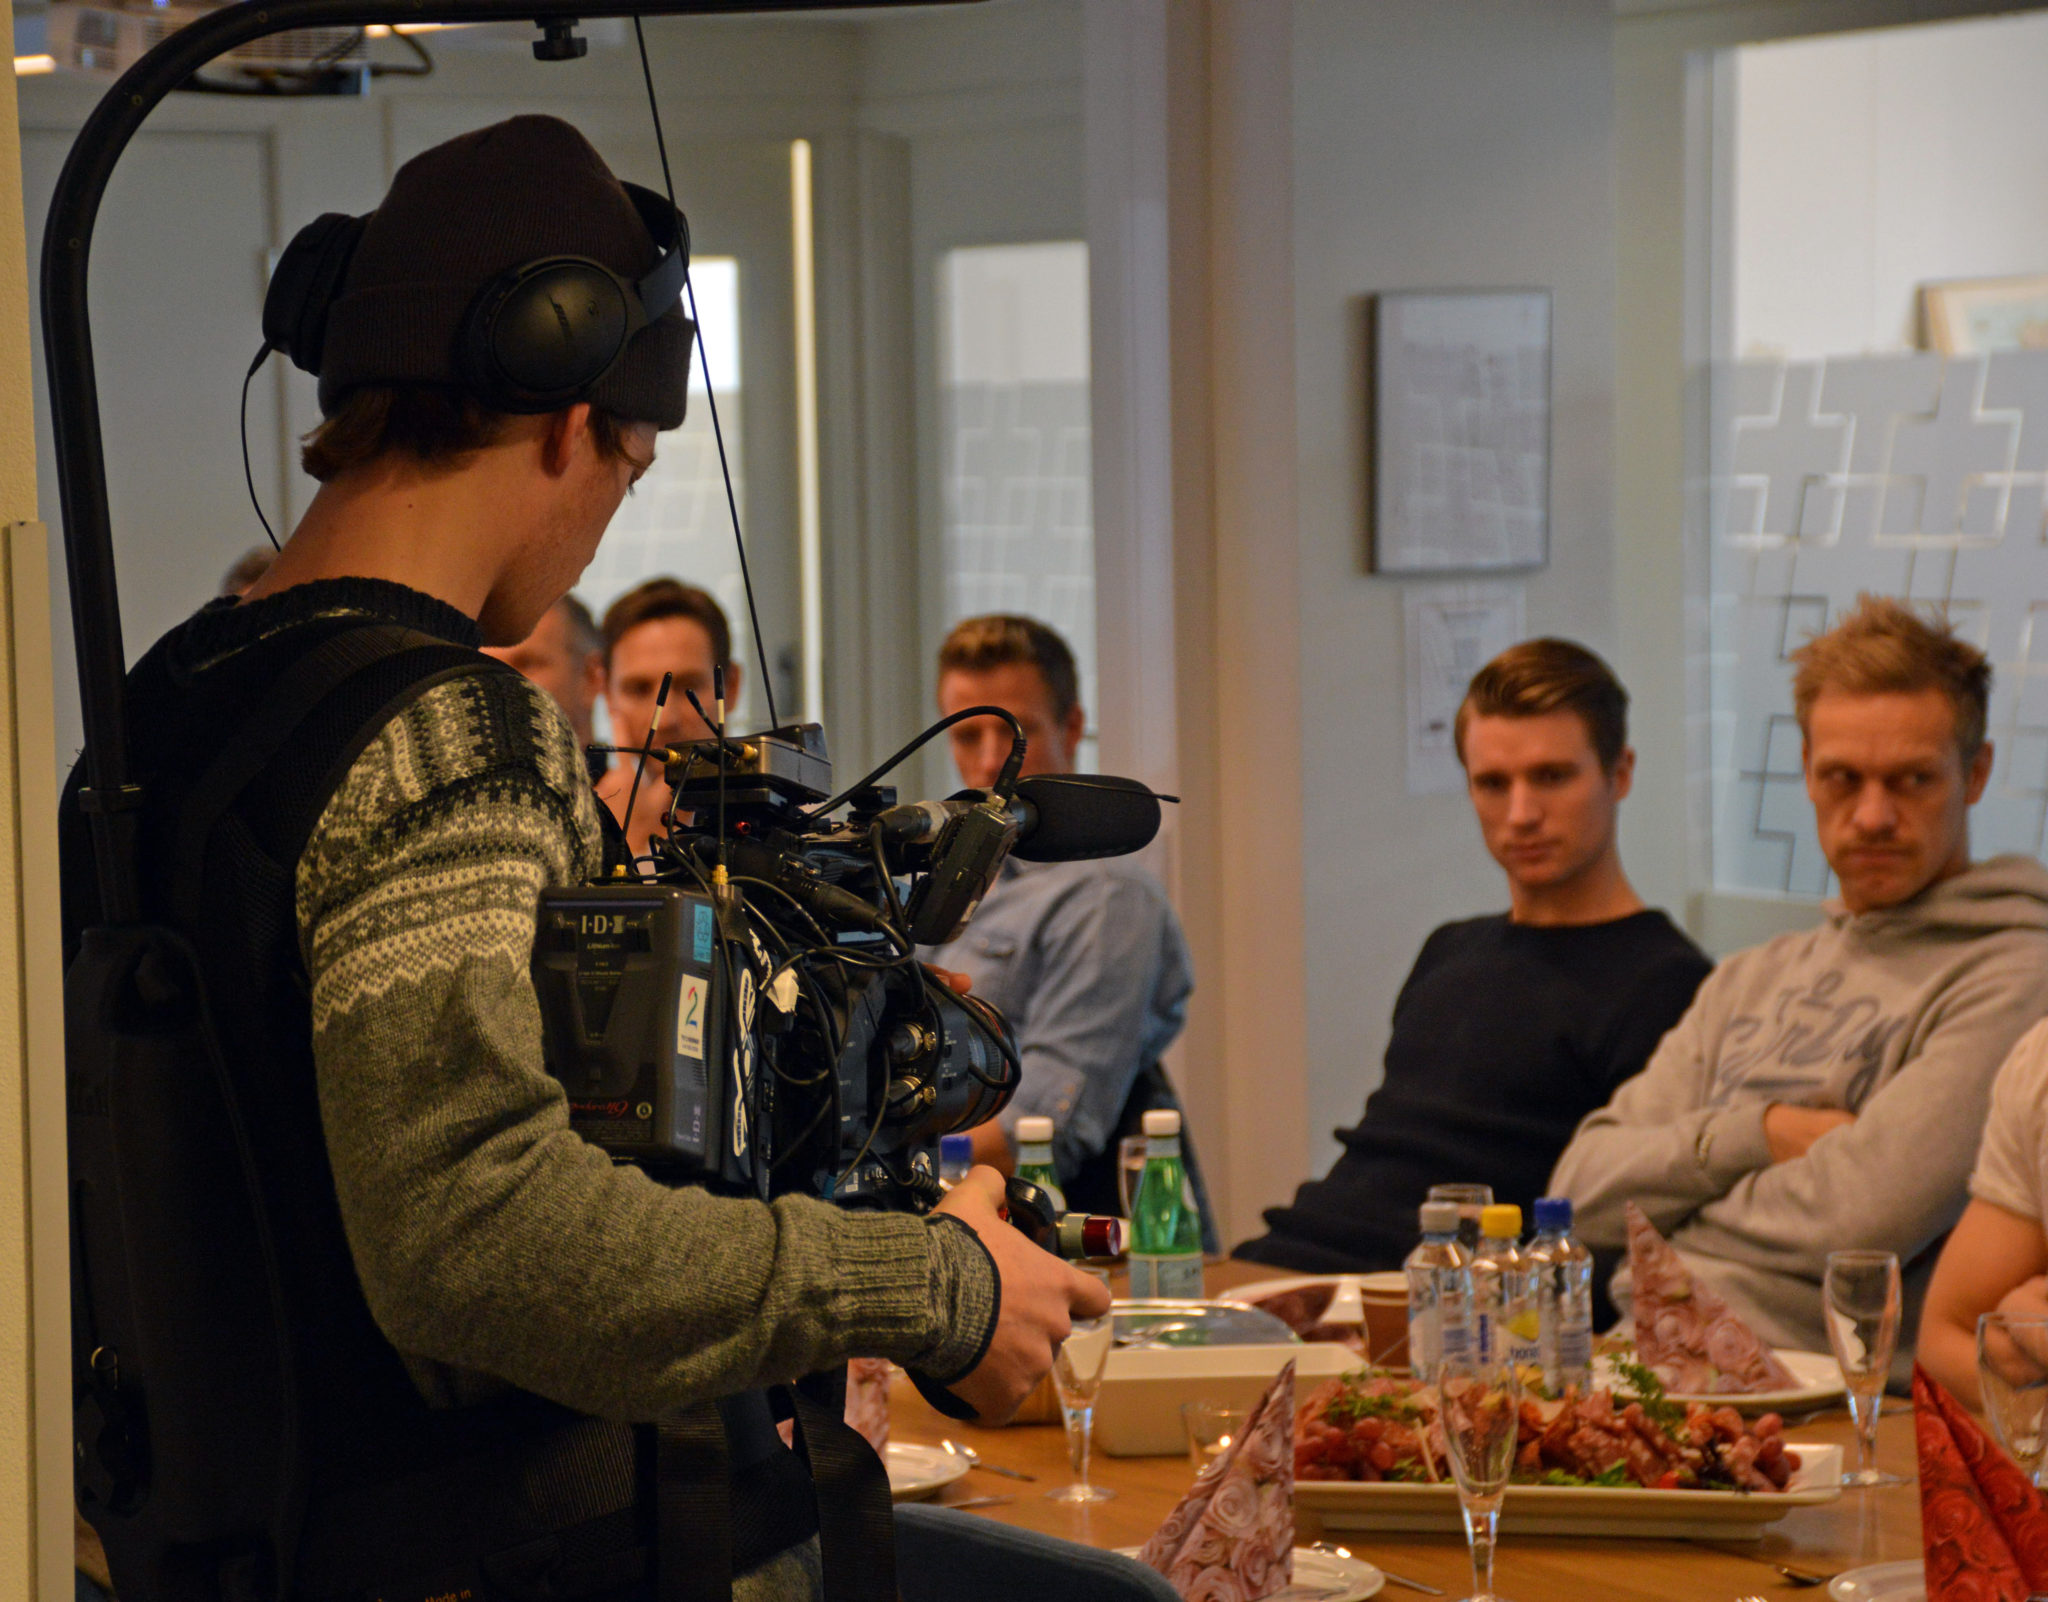 Et produksjonsteam fra TV2 var med på seansen for å filme Brede Frettem Csiszas og Roy Johansen. Begivenheten blir muligens med i neste sesong av den populære realityserien Iskrigerne på TV2.